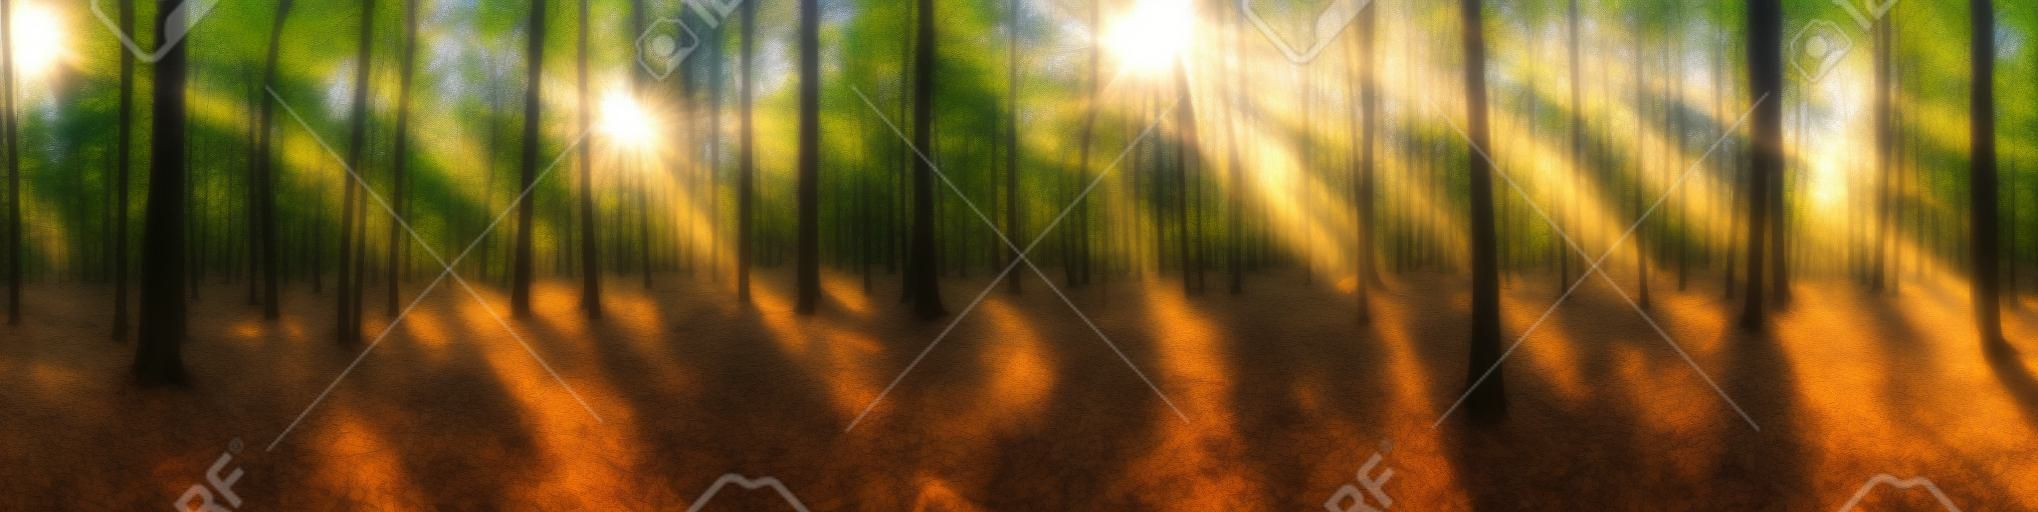 Hermoso panorama de bosque con sol brillando a través de los árboles